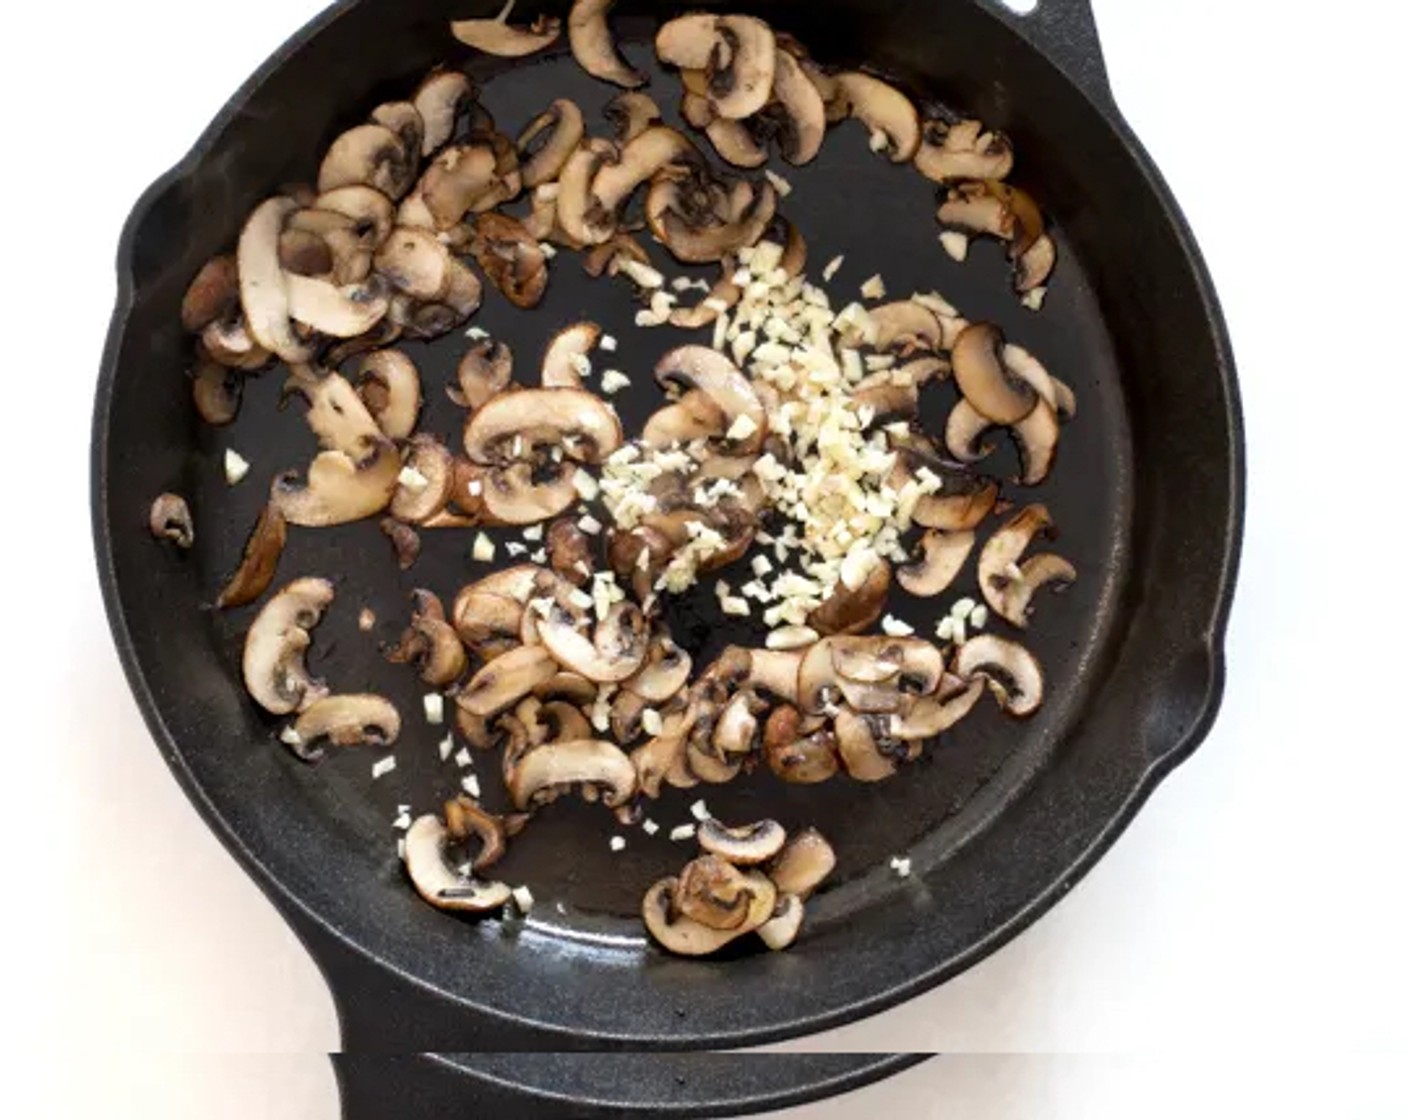 Schritt 2 In der Zwischenzeit in einem mittelgrossen Topf das Olivenöl (2 Esslöffel) erhitzen und die Champignons (115 g) 3 Minuten anbraten, bis sie weich und gebräunt sind. Knoblauch (4 Zehen) hinzugeben und 1 Minute kochen. Vom Herd nehmen.